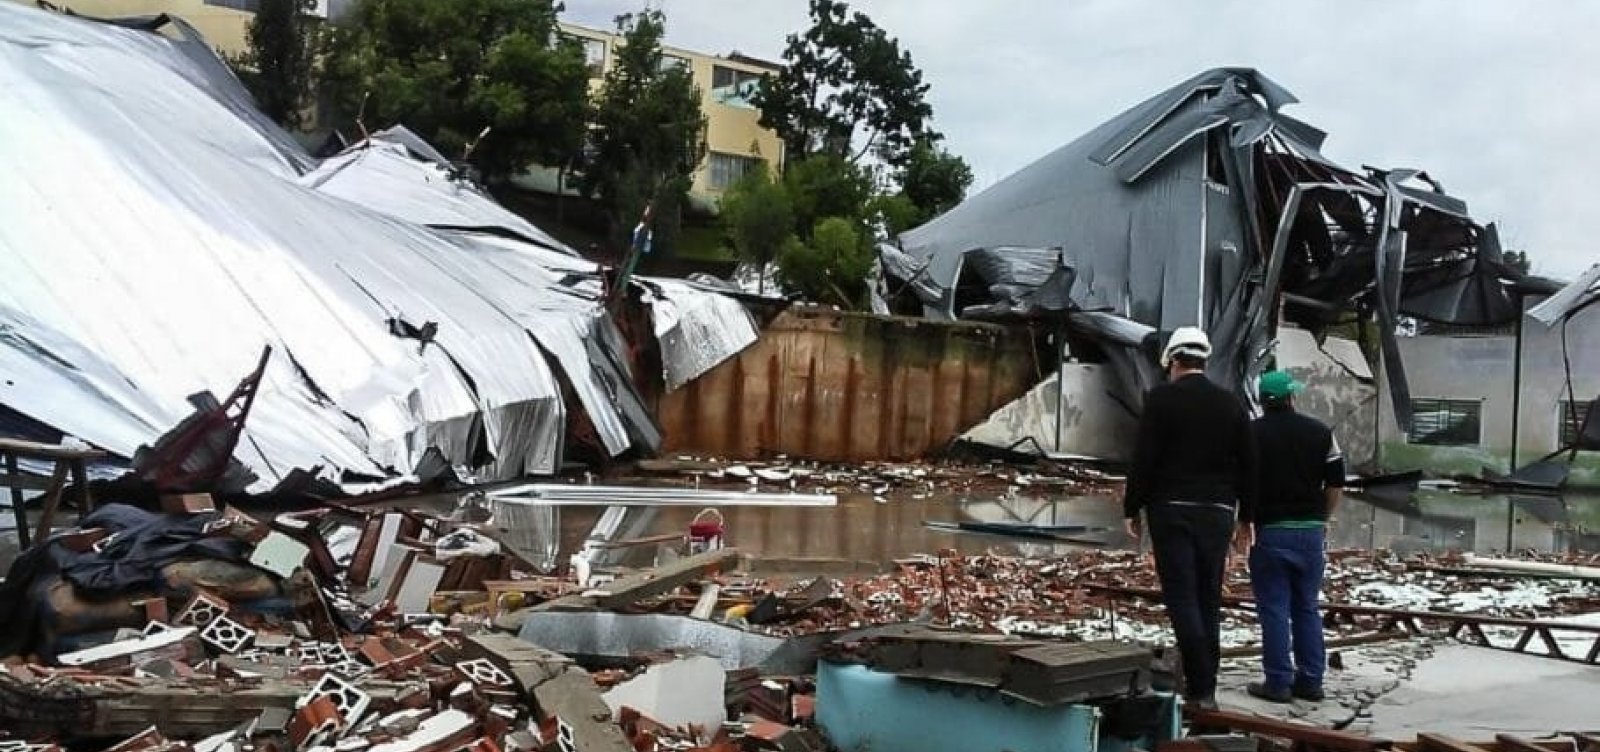 ‘Ciclone bomba’ provoca ao menos quatro mortes no Sul do Brasil